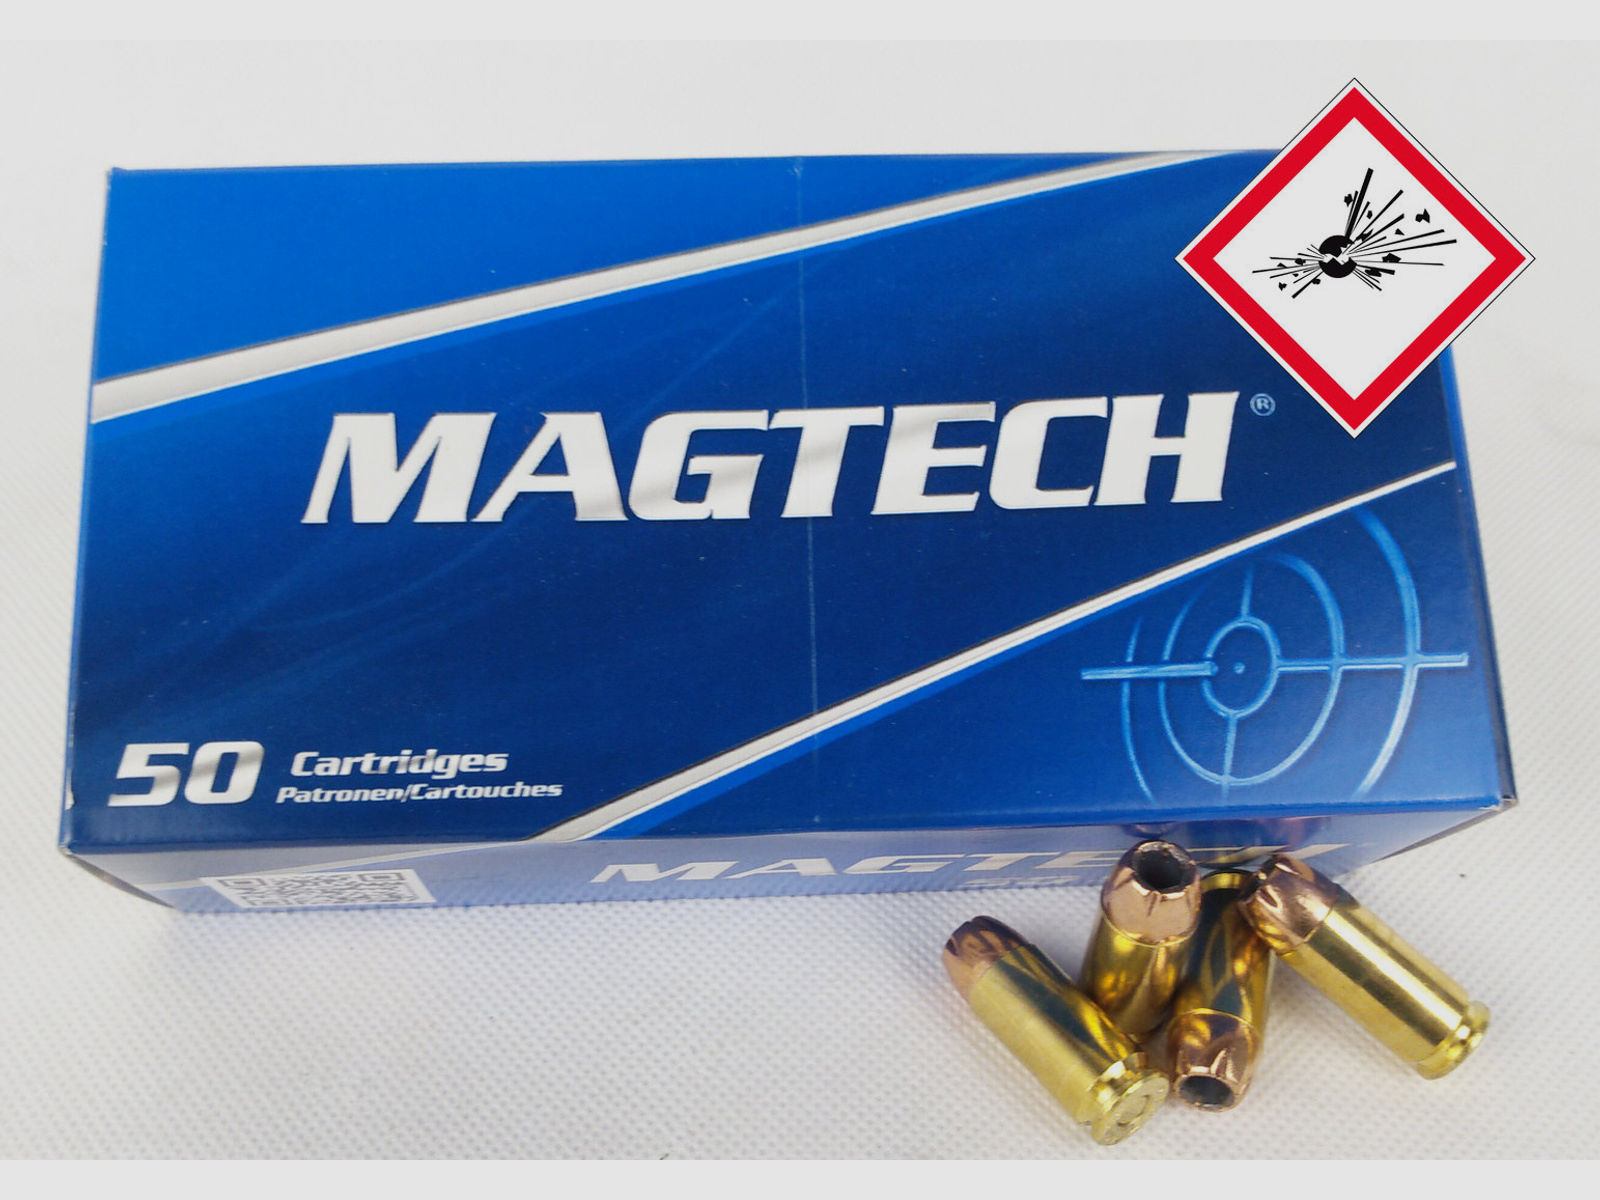 Magtech Pistolenpatrone .40S&W JHP 180grs